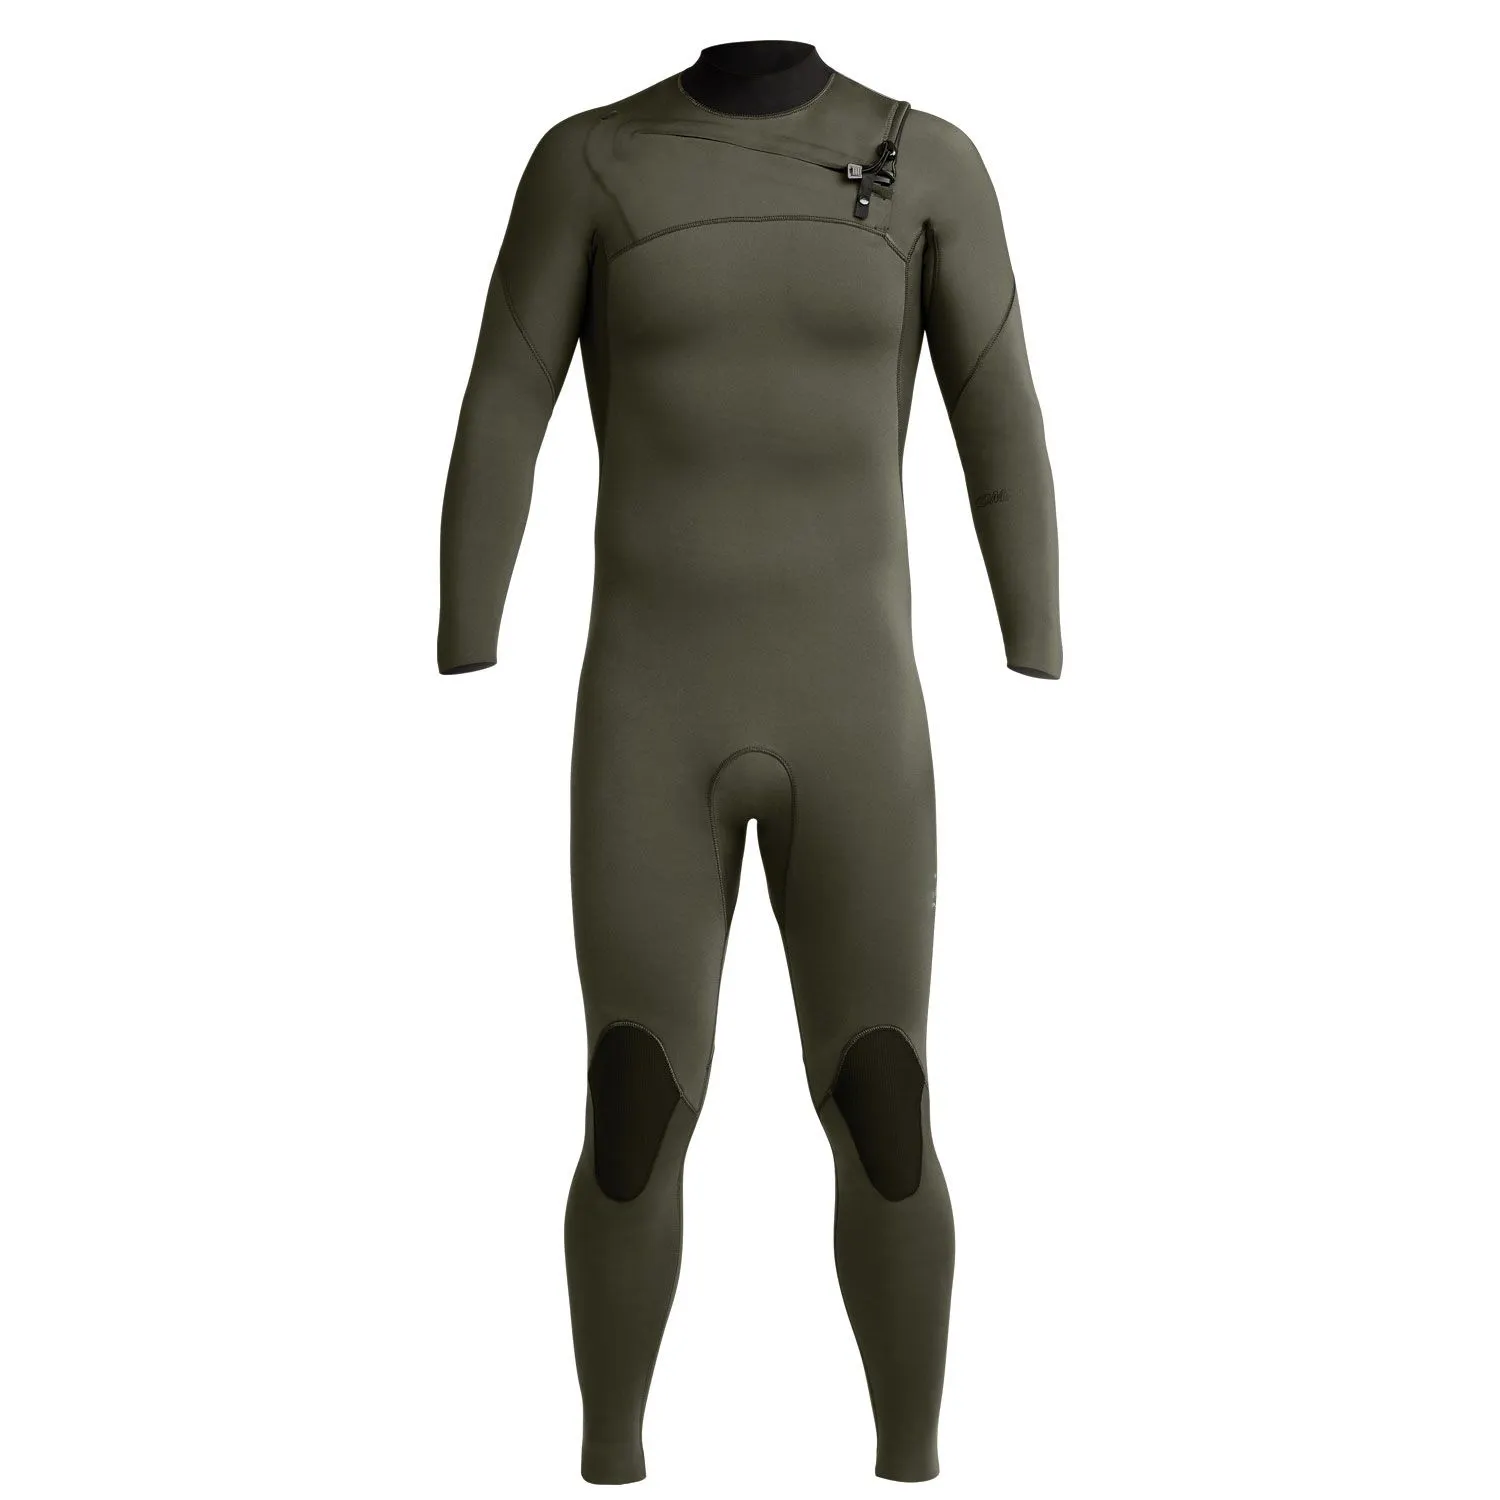 Неопреновый гидрокостюм для мужчин, супер эластичный гидрокостюм для дайвинга на молнии на груди, клей и потайной строчкой 4/3 мм, гидрокостюм для серфинга с длинным рукавом